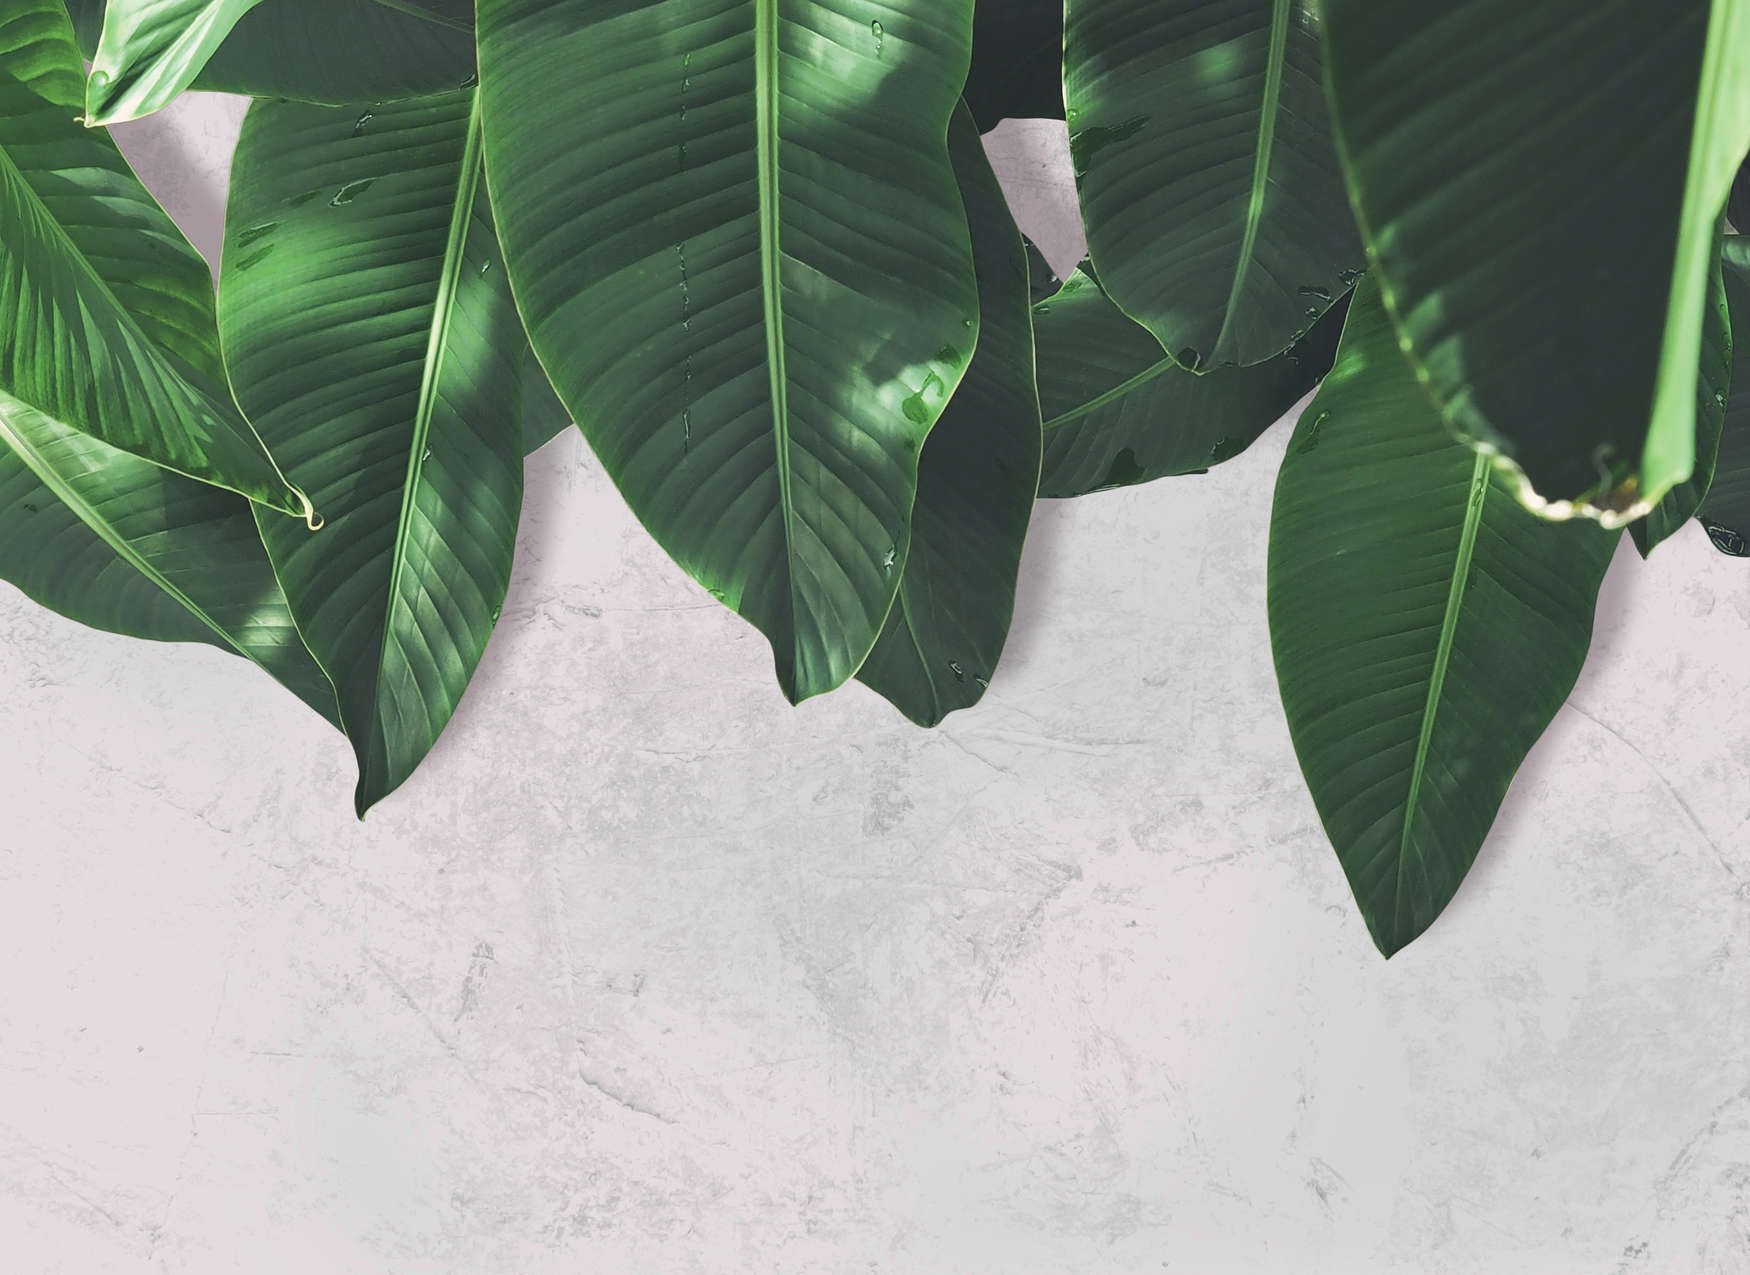             Palmblätter Fototapete Blätterwand – Grau, Grün
        